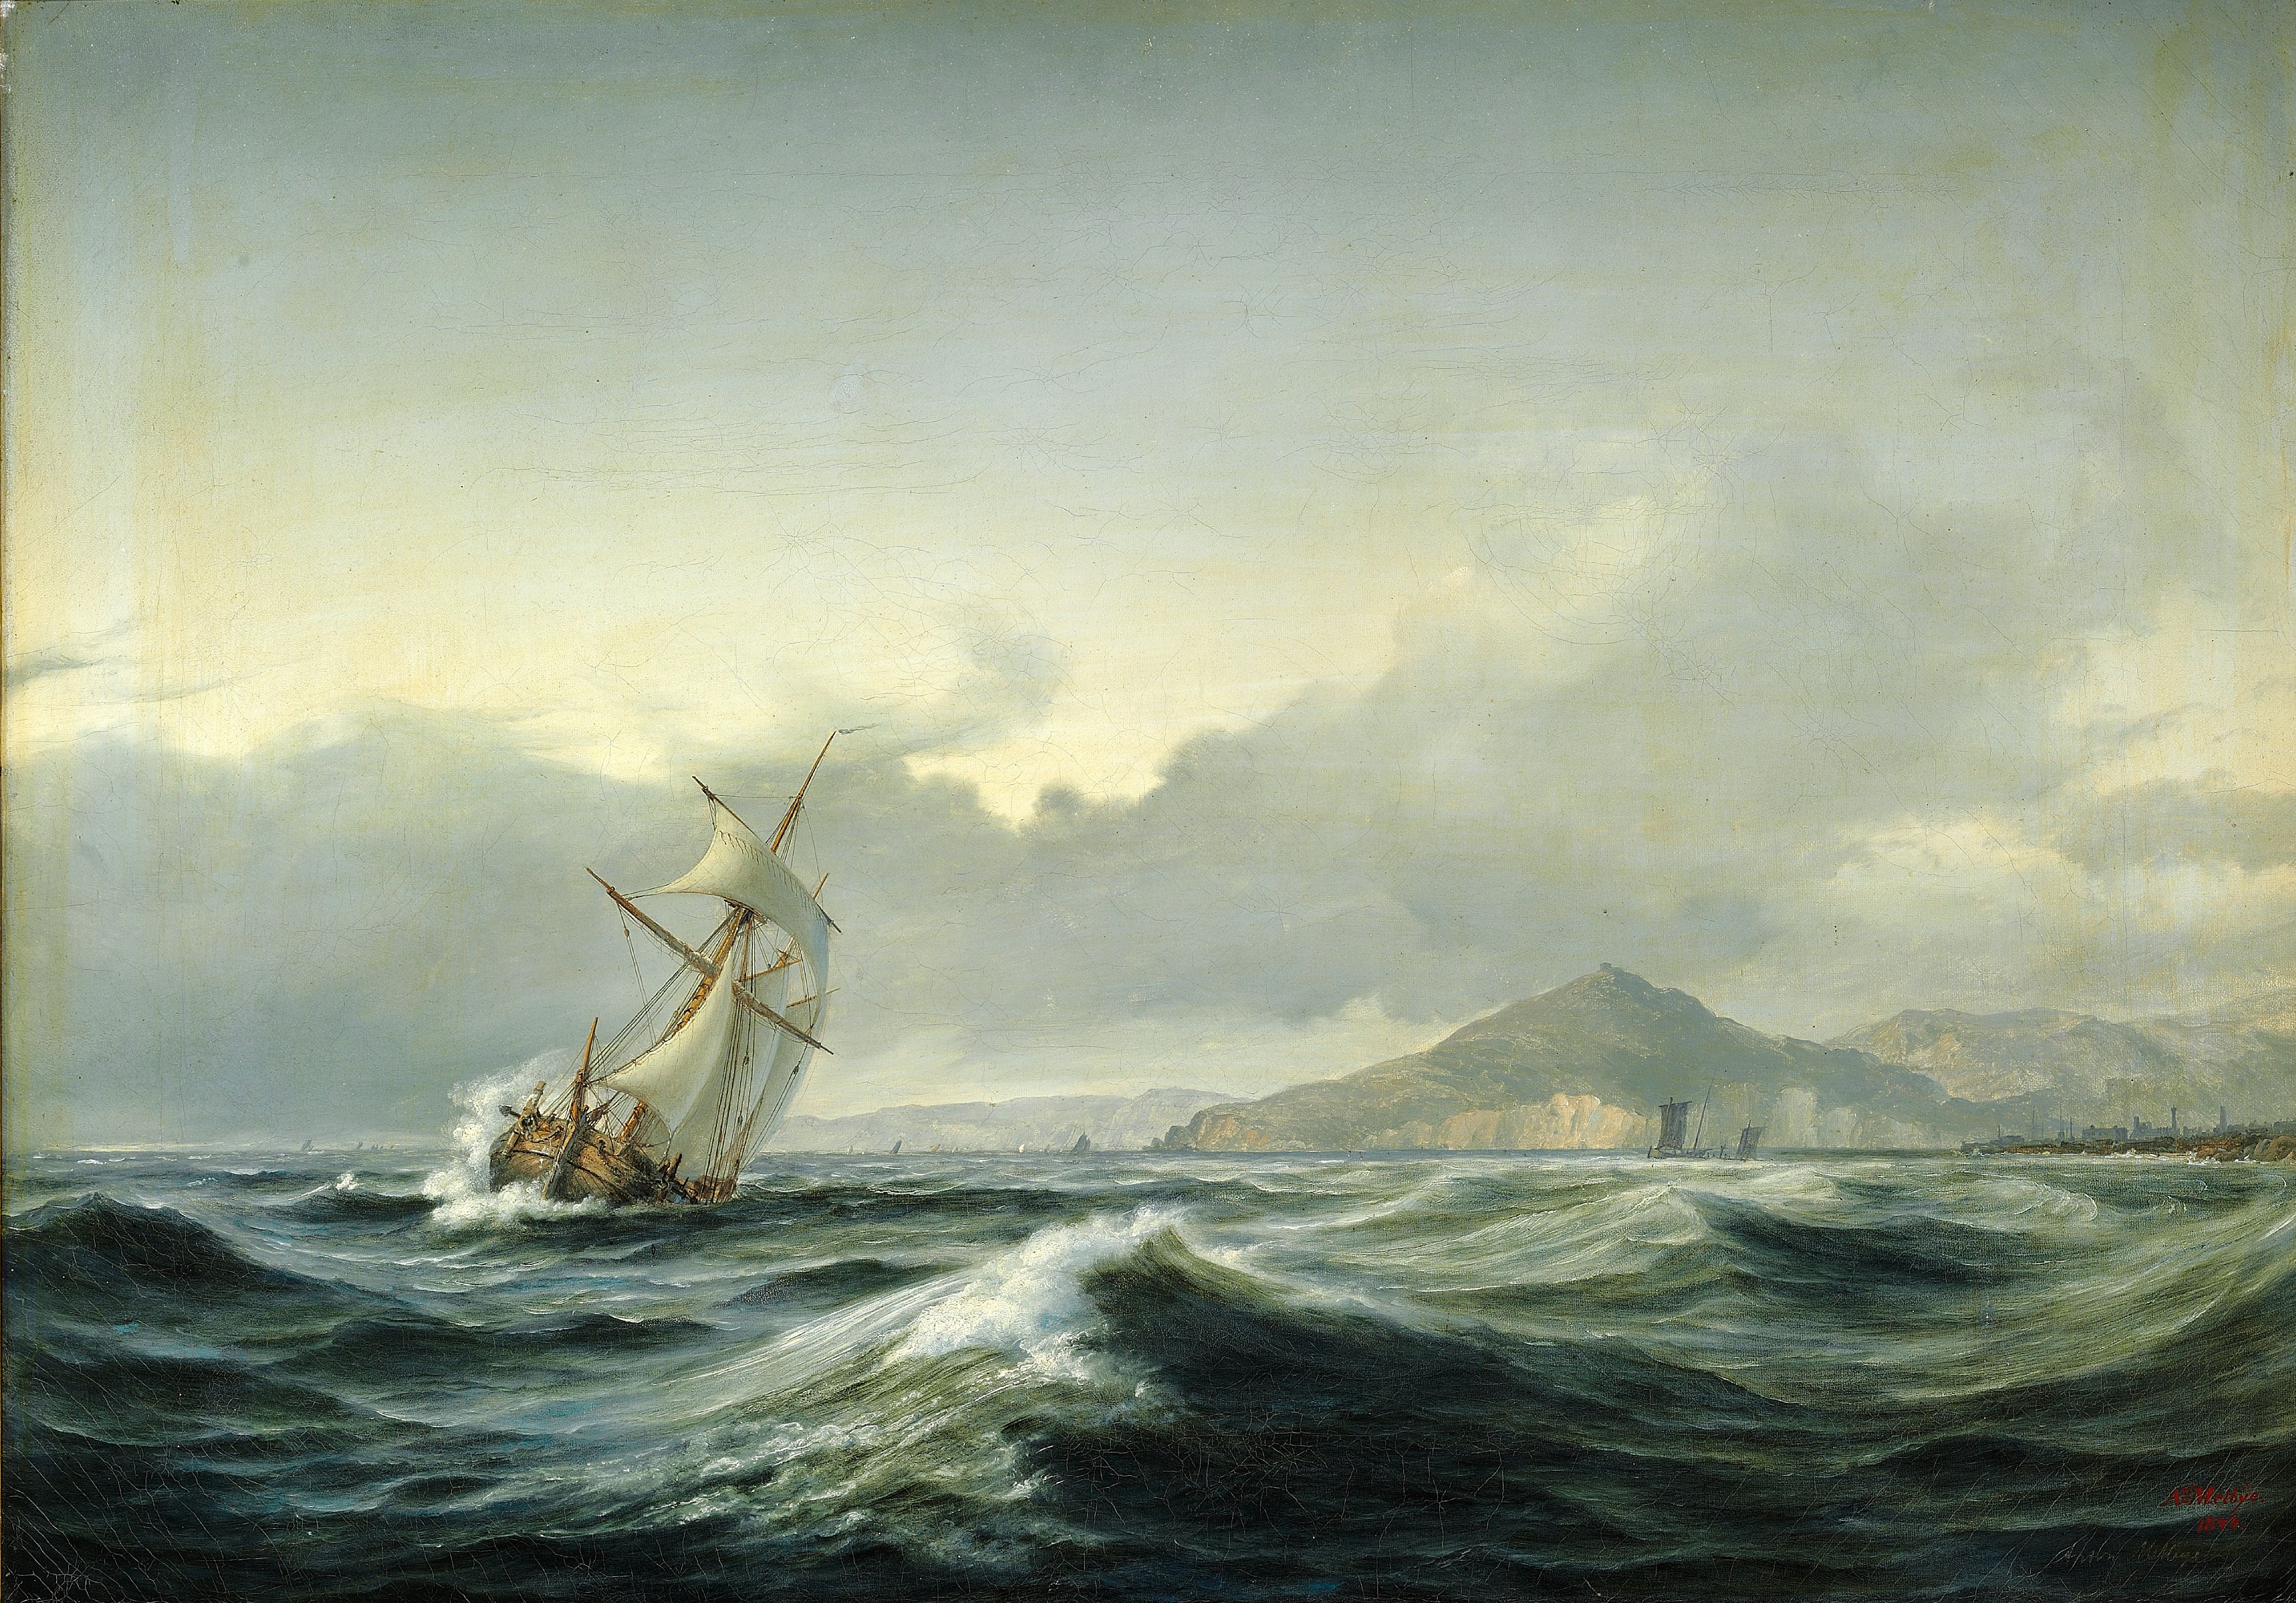 Anton Melbye - Marinemaleri med sejlskib i hård sø. I baggrunden en klippekyst